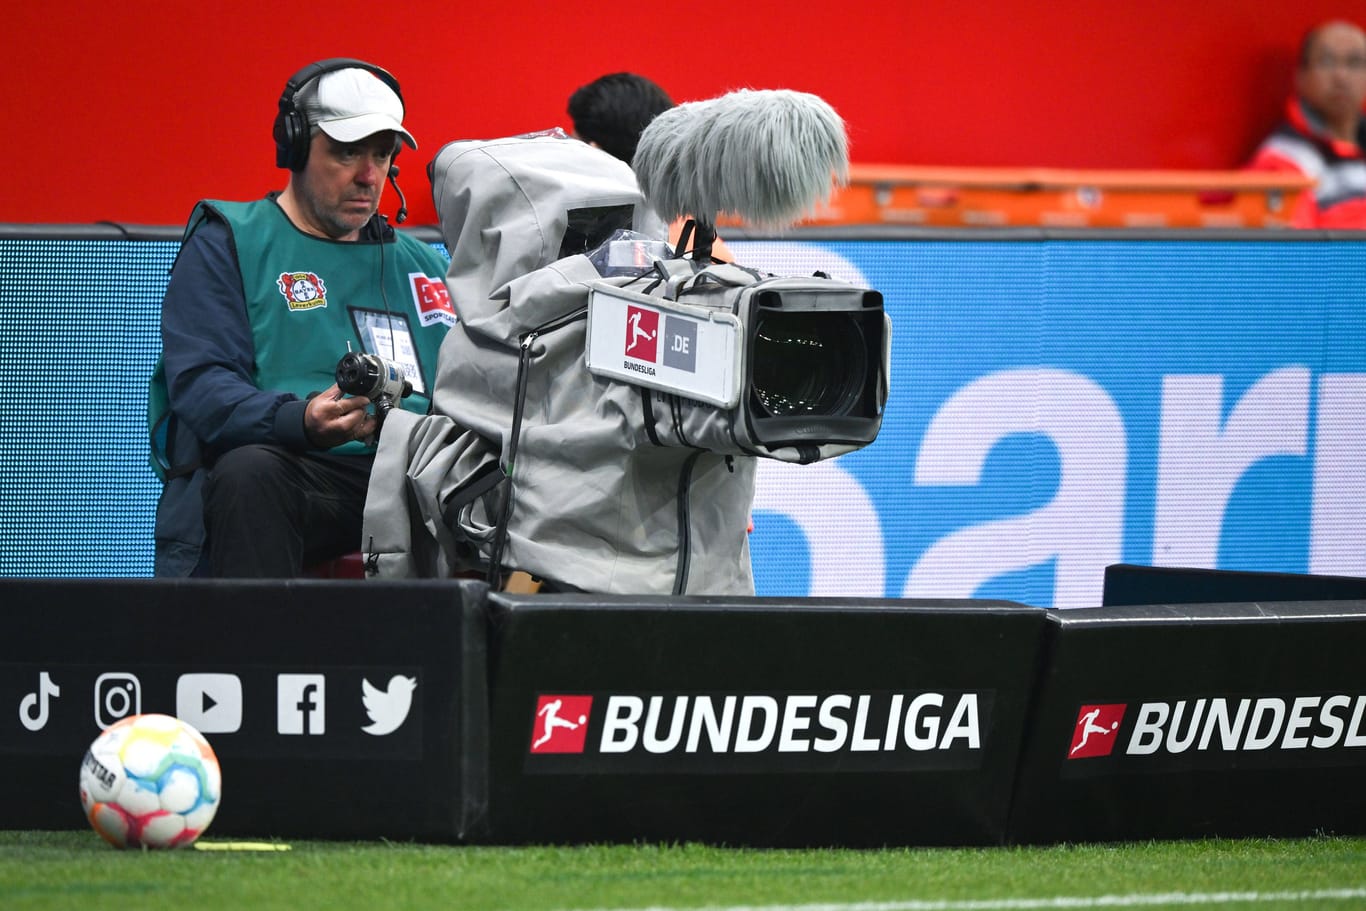 TV-Fernsehkamera am Spielfeldrand: Sky und DAZN teilen sich derzeit die Übertragungsrechte der Bundesliga.